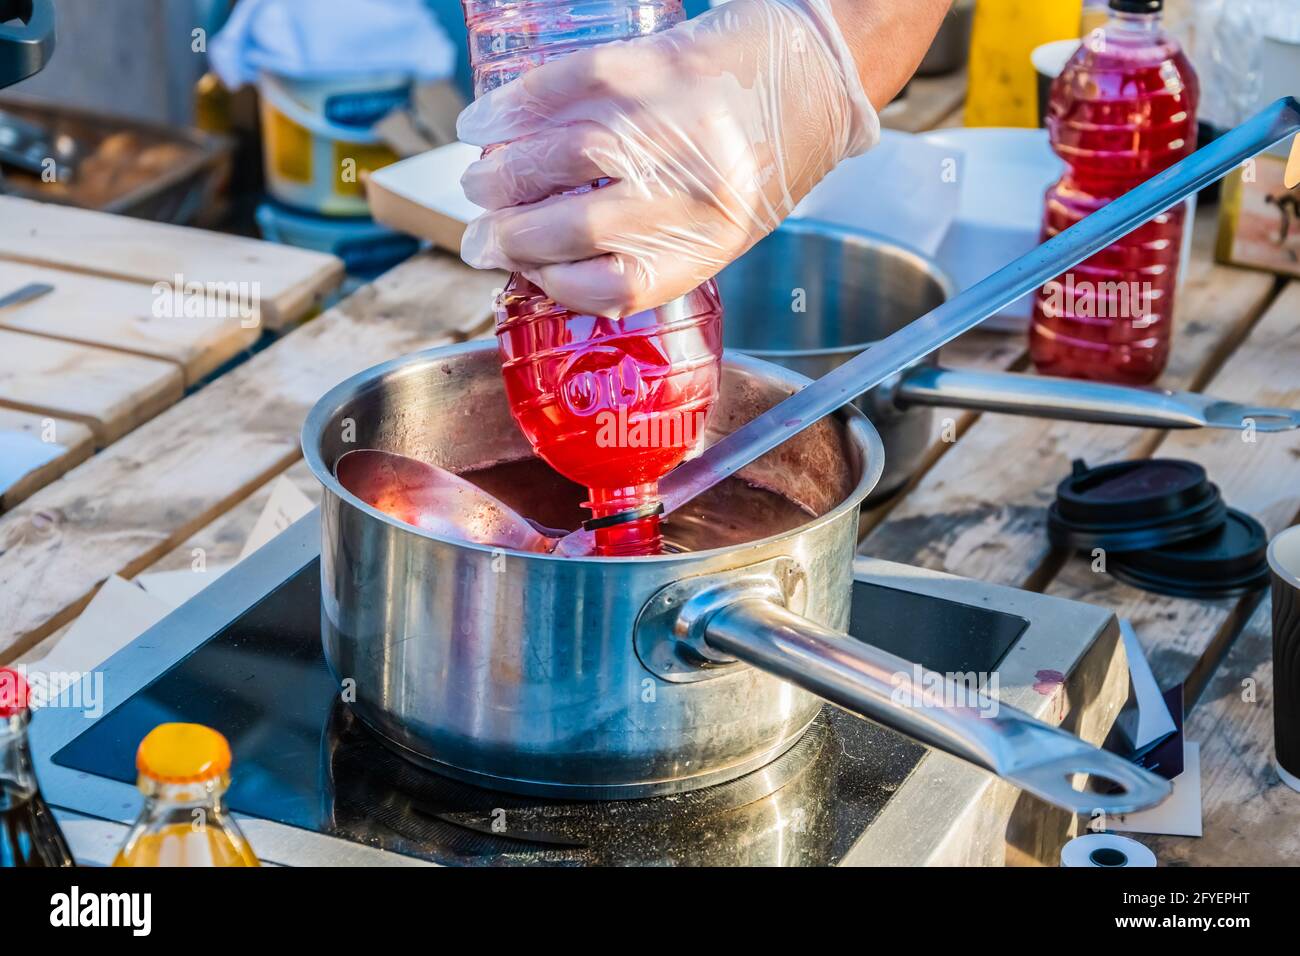 Jus de baies à base de fraises fraîches ou de canneberges - une boisson pour étancher votre soif est préparée sur le comptoir d'un vendeur de rue. Fête de la gastronomie dans Banque D'Images